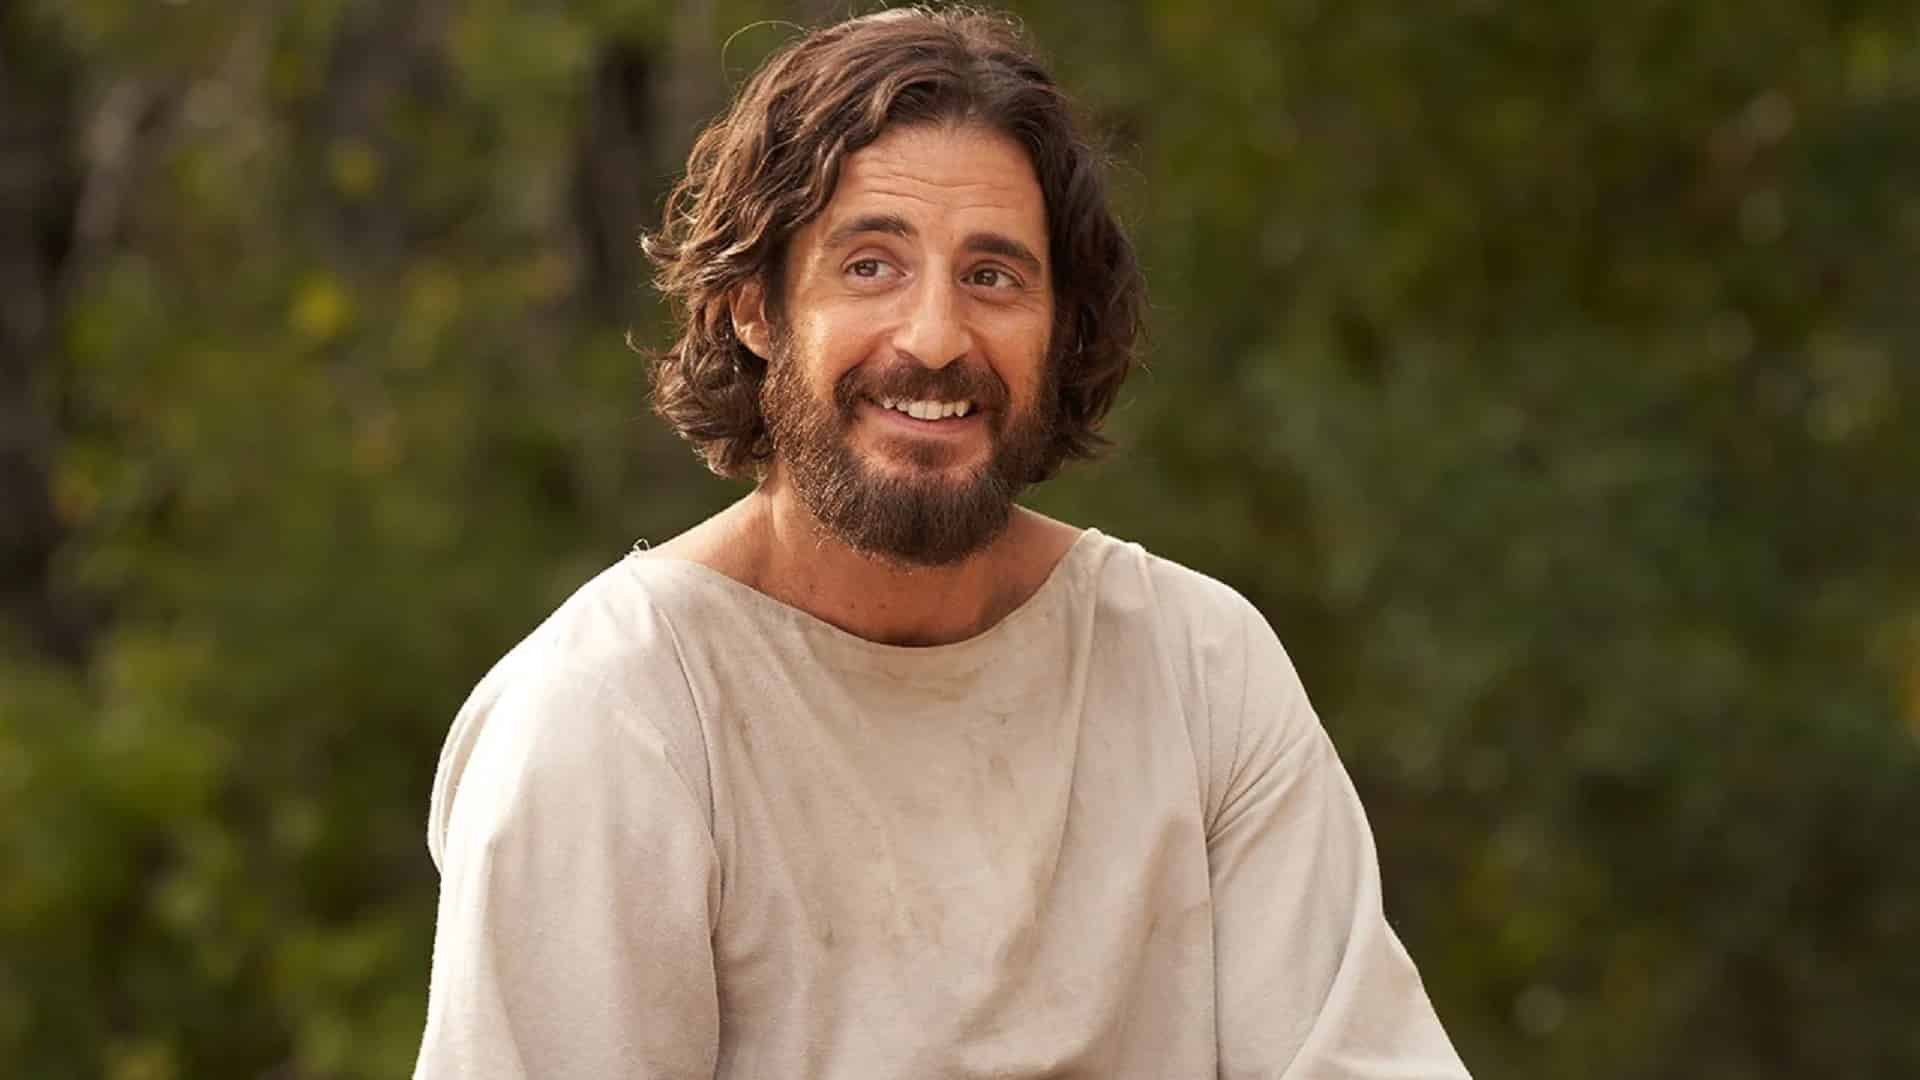 The Chosen Série Sobre a História Jesus estreia em TV aberta pelo